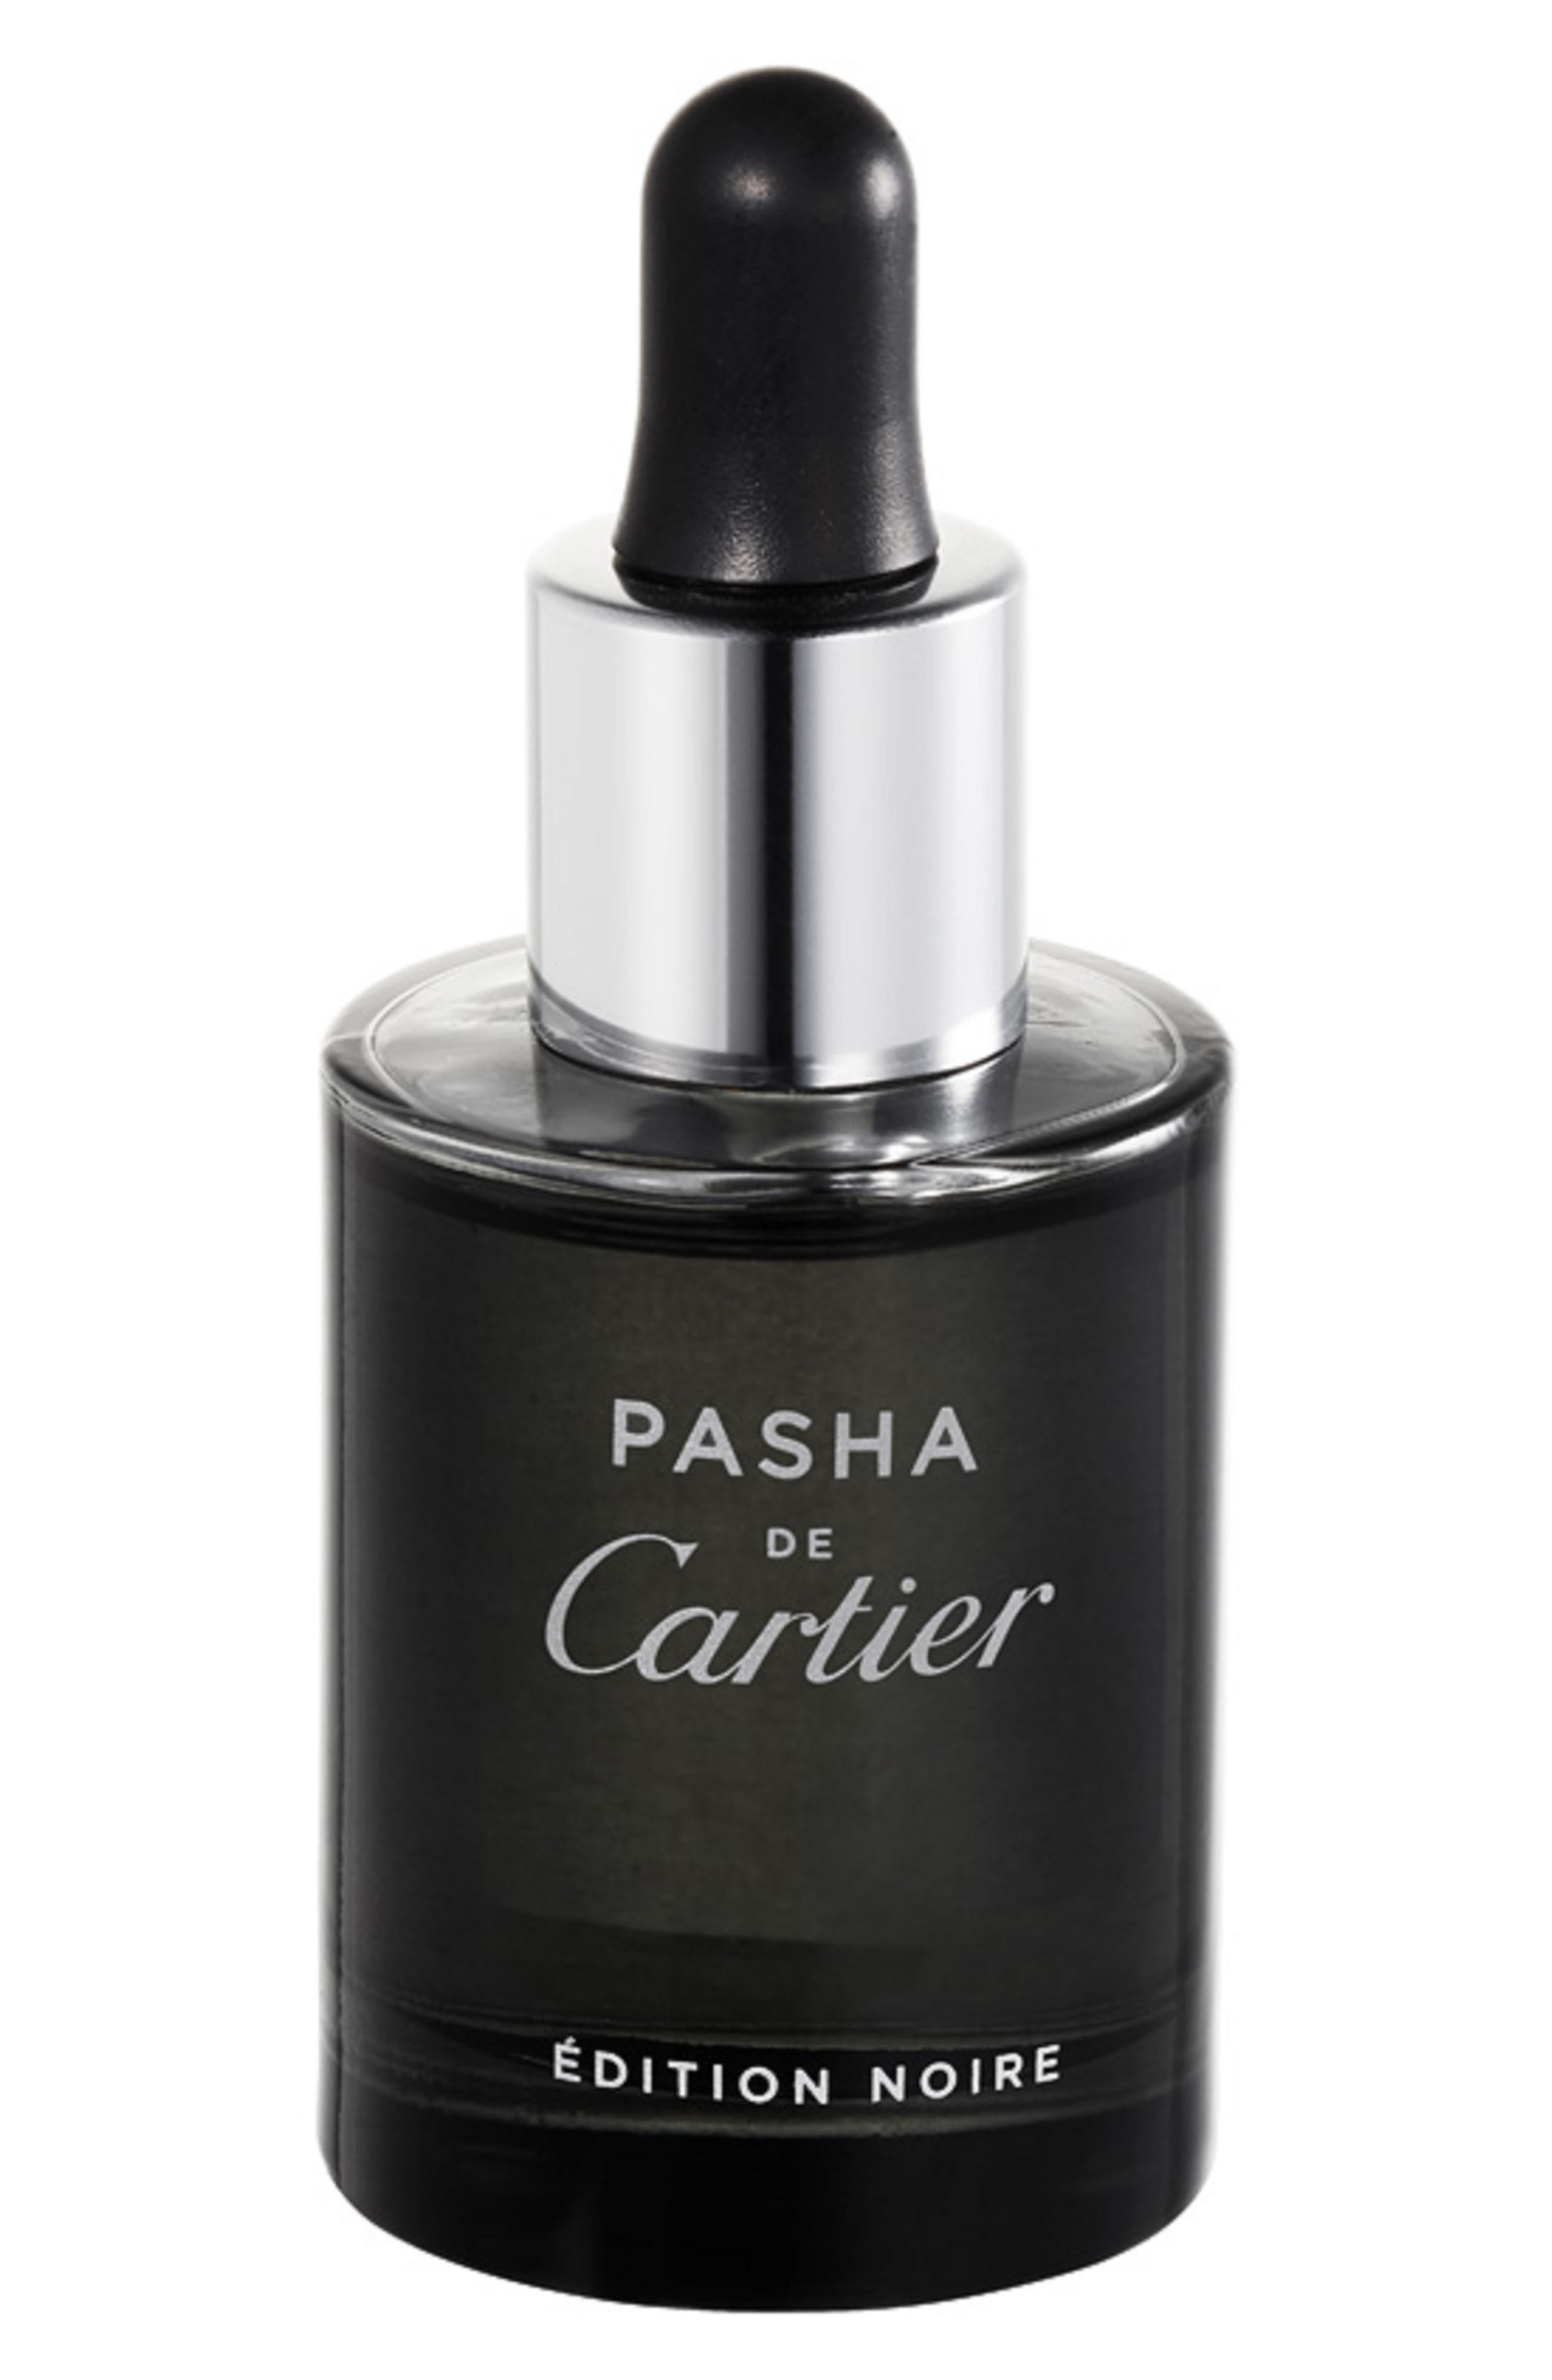 Pasha de Cartier Edition Noire Scented Oil at Nordstrom, Size 0.9 Oz